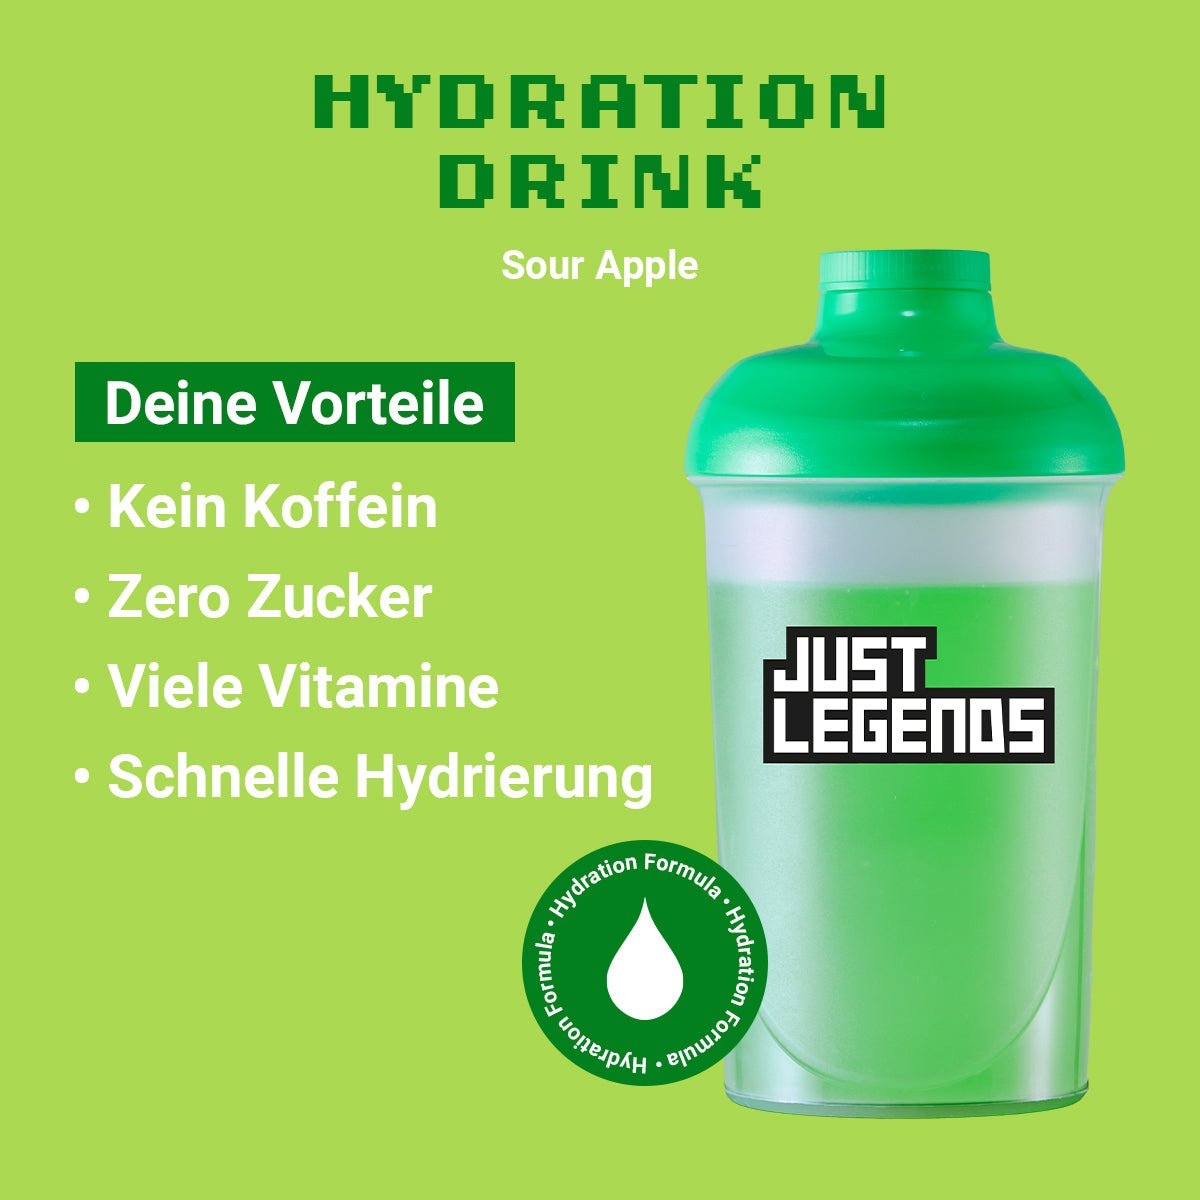 Just Legends Hydration Drink Sour Apple | Funktionaler, veganer Hydration Drink auf Pulverbasis ohne Zucker, mit wenig Kalorien, vielen Vitaminen und natürlichen Aromen.